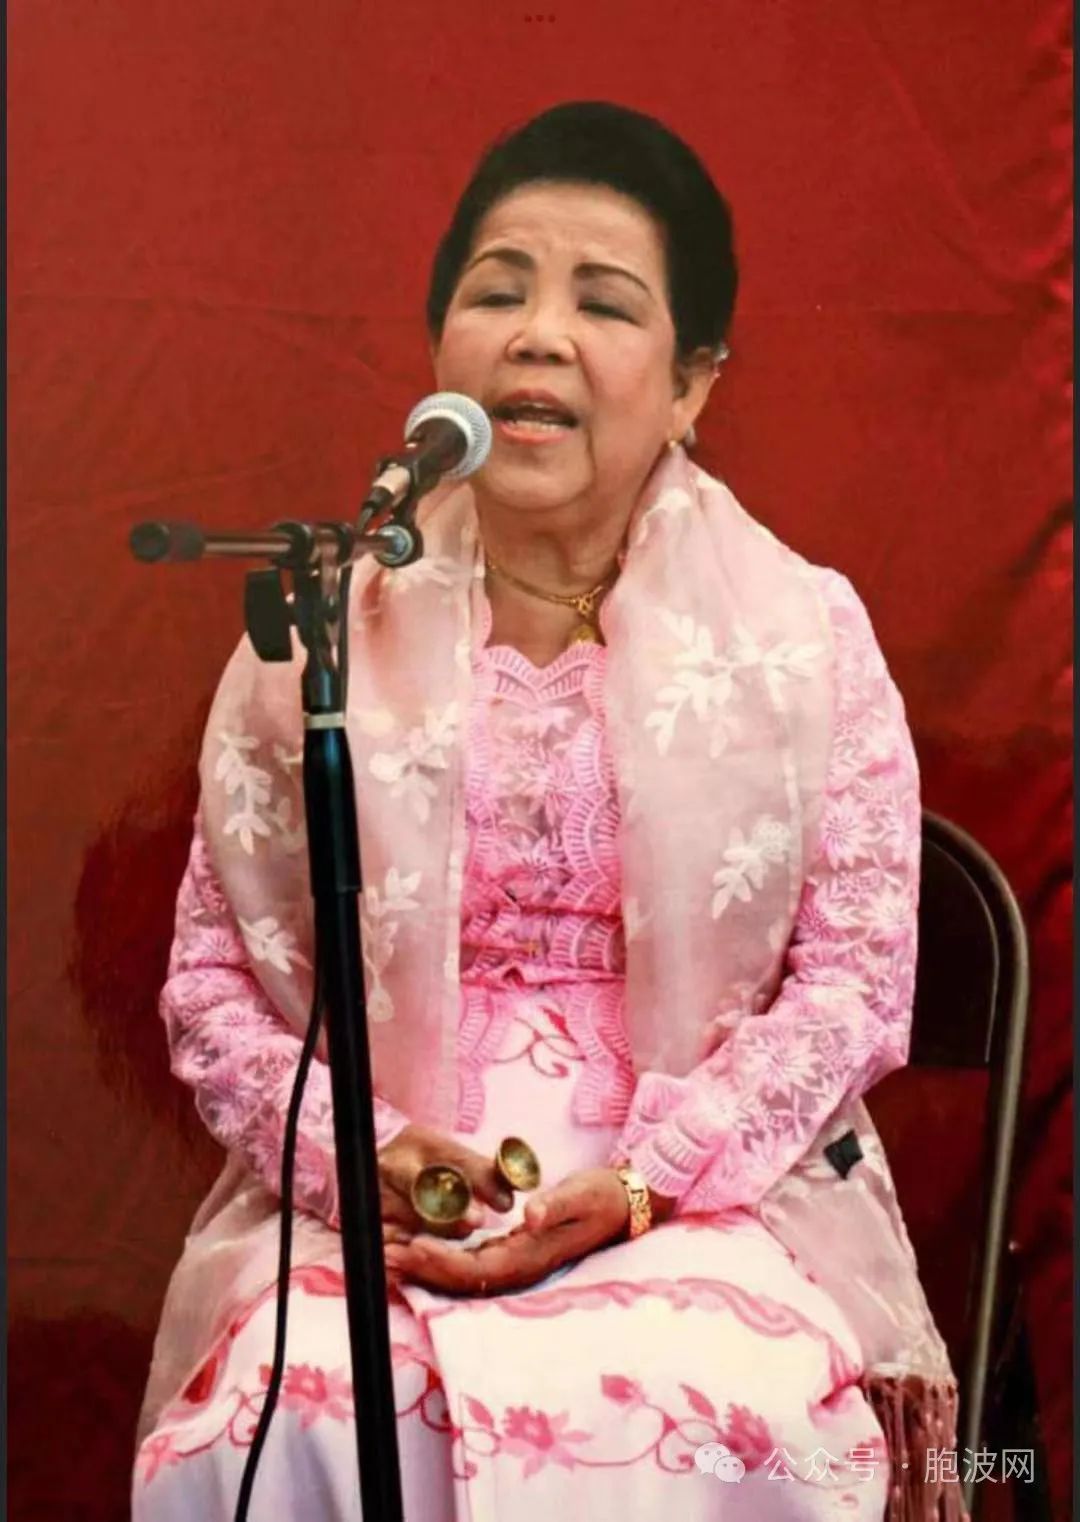 缅甸著名传统歌手玛玛艾客死美国